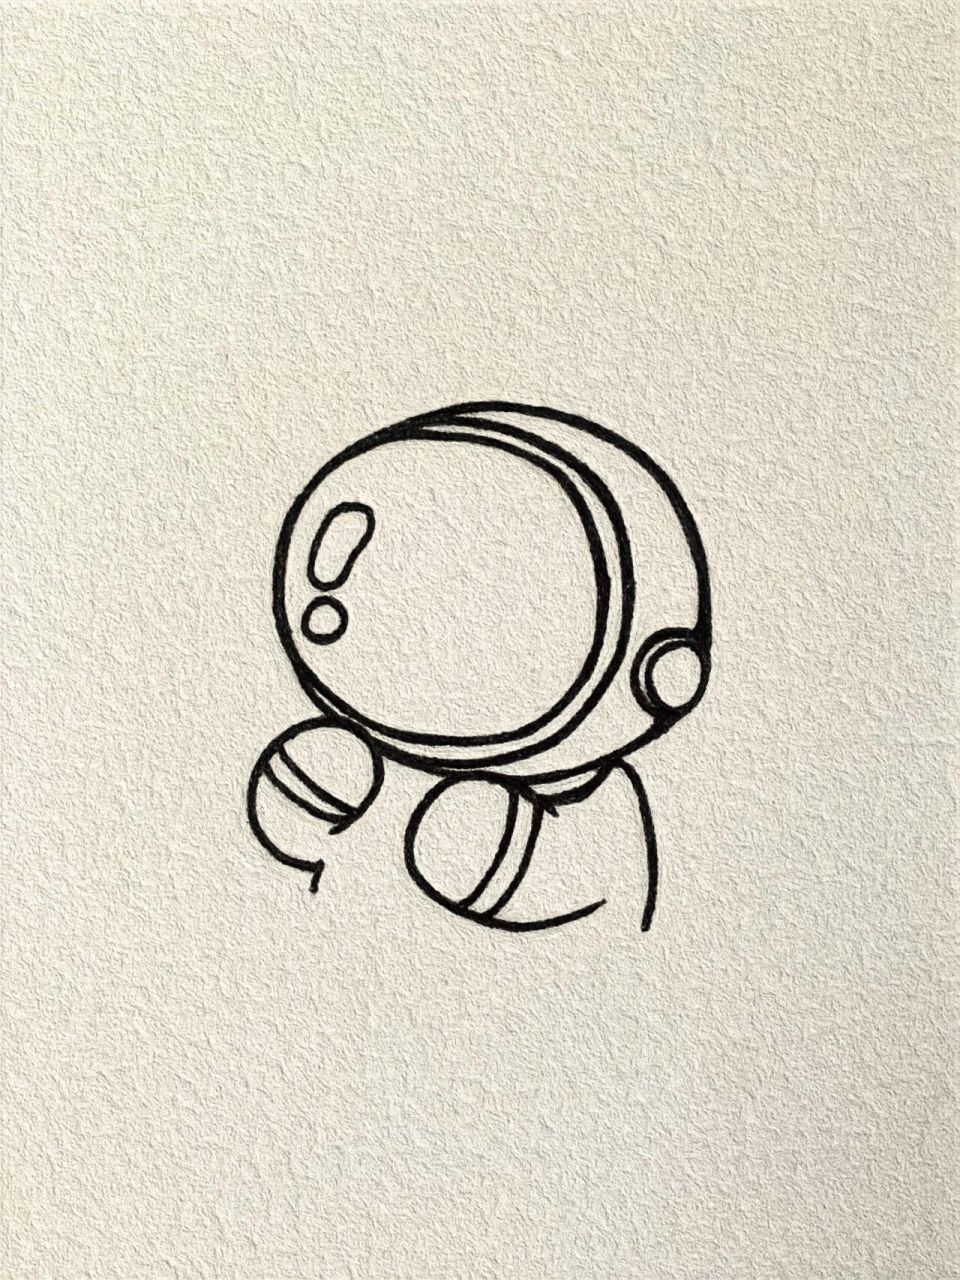 太空人的简单画法图片